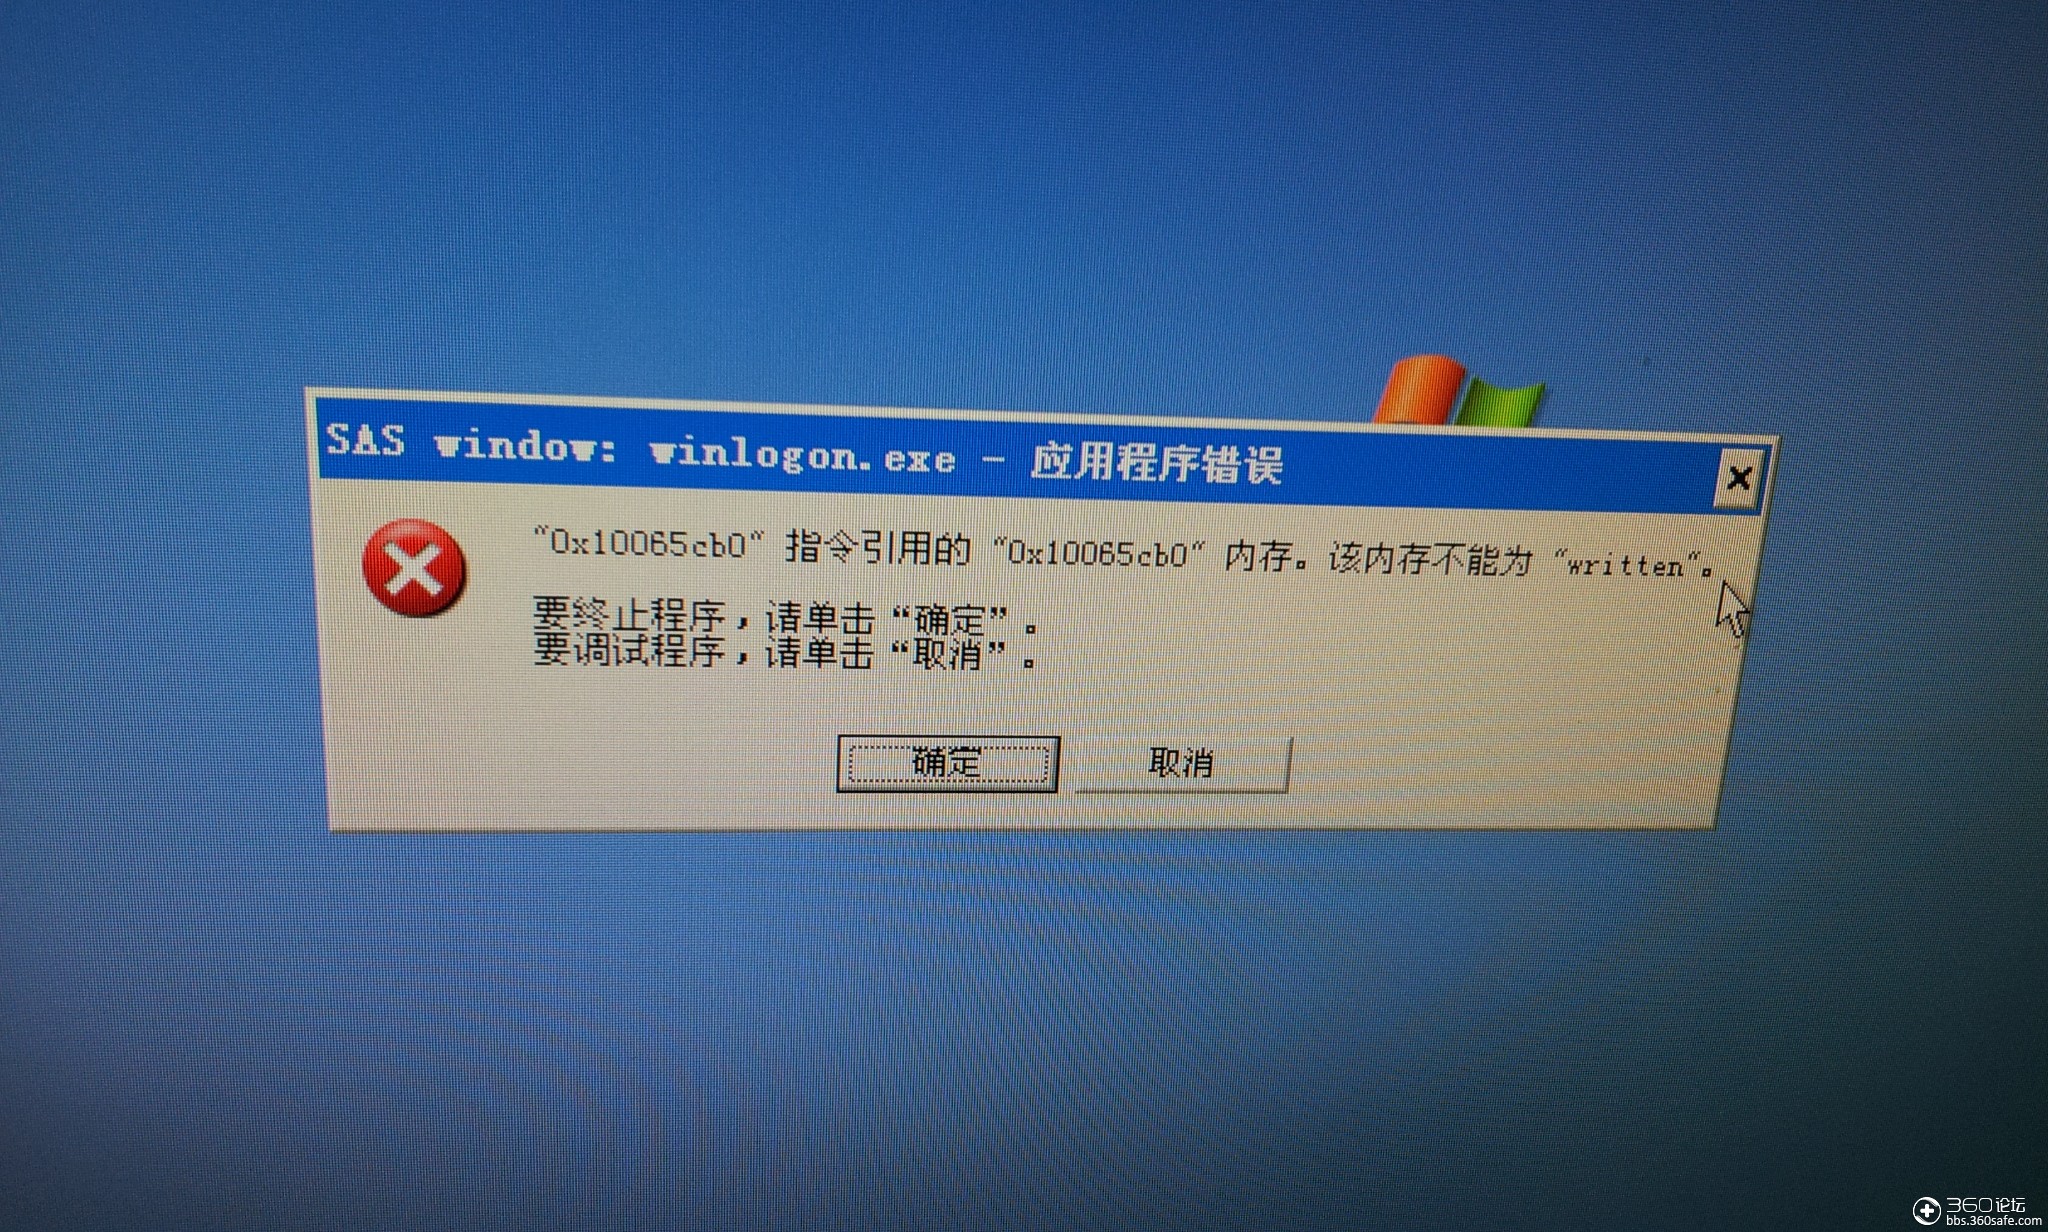 Windowsxp错误图片